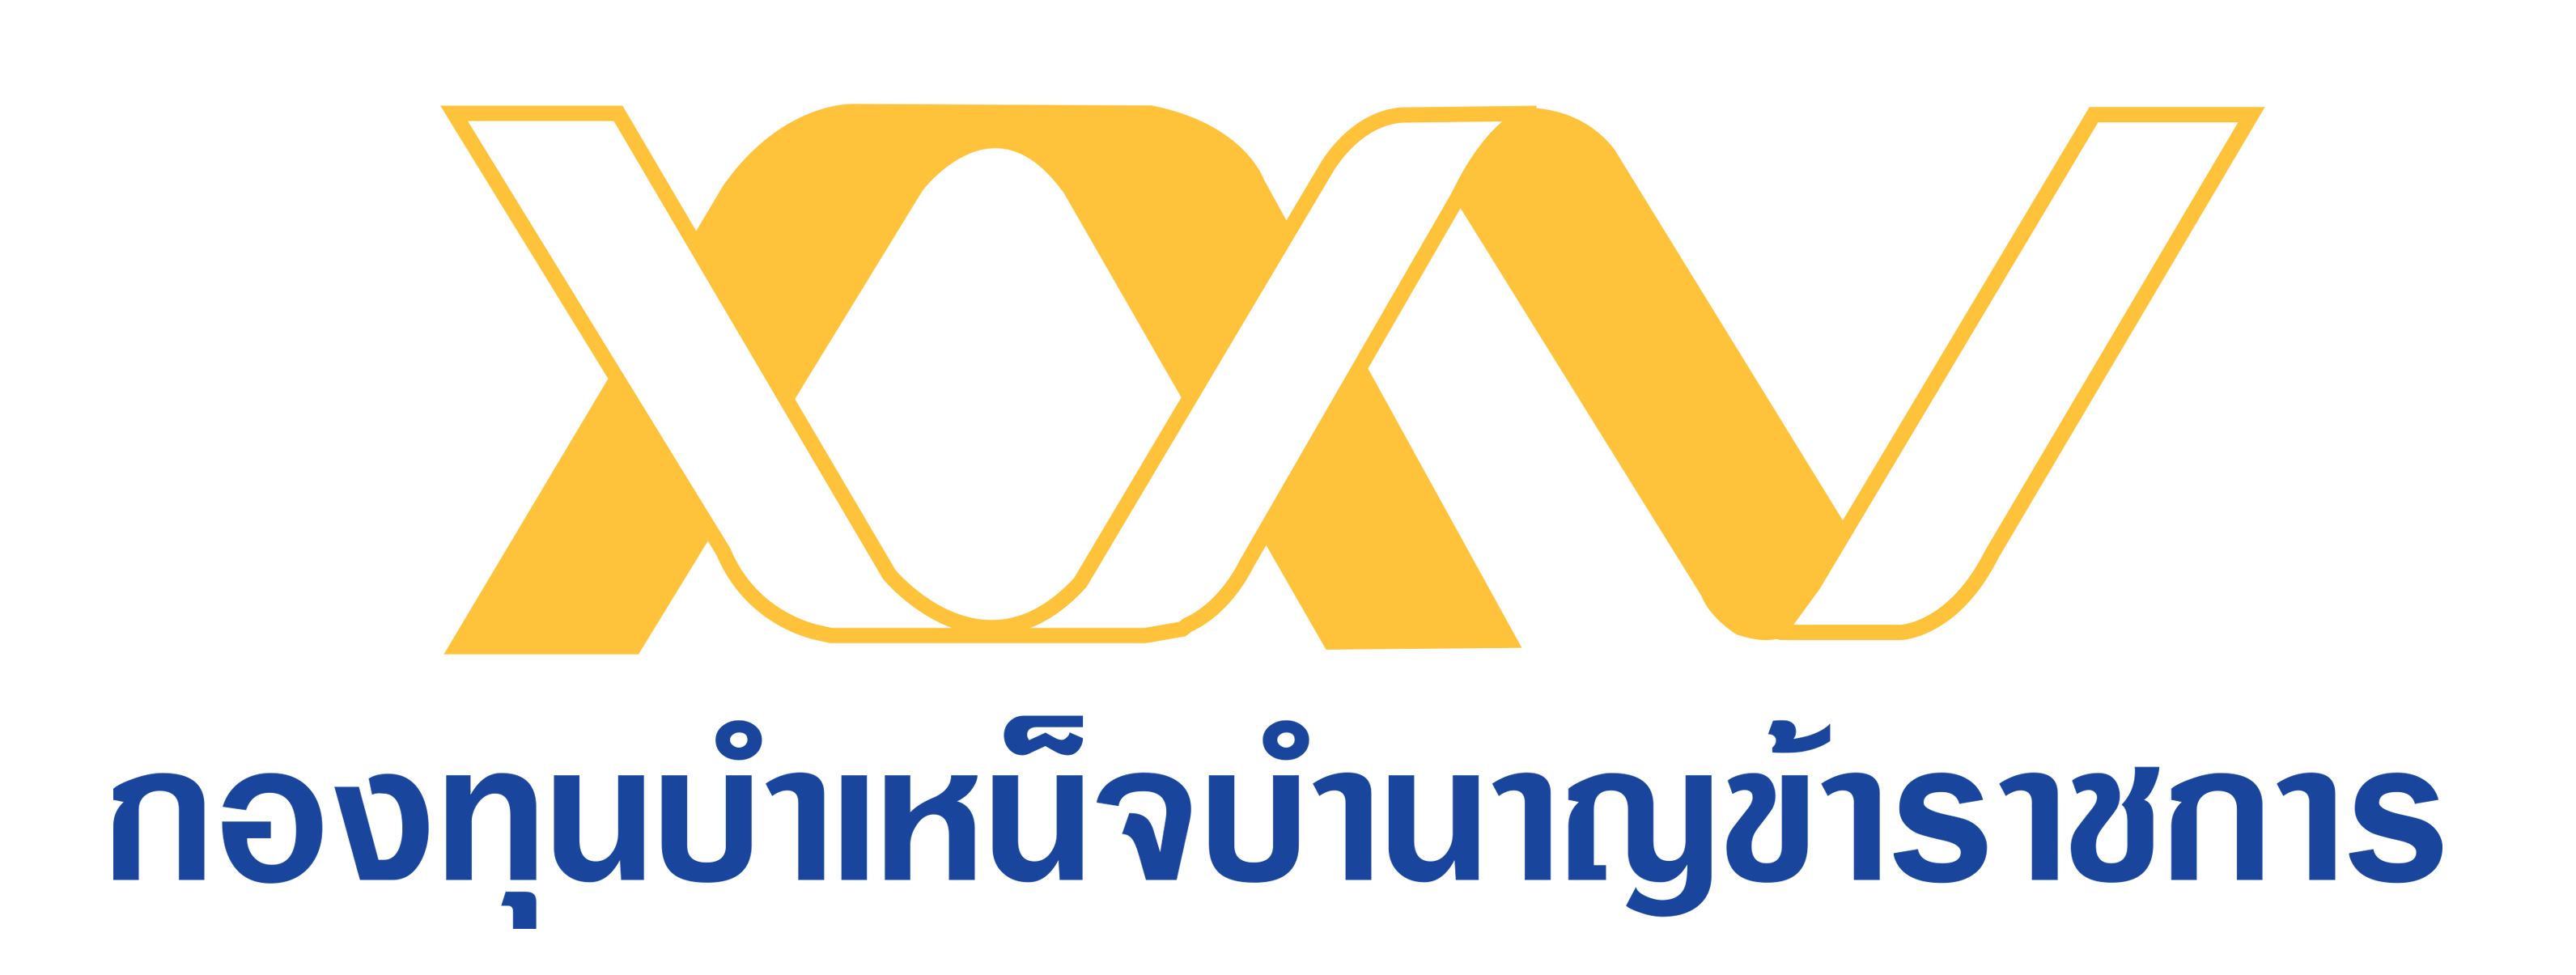 กับกองทุนบำเหน็จบำนาญข้าราชการ (กบข.) logo